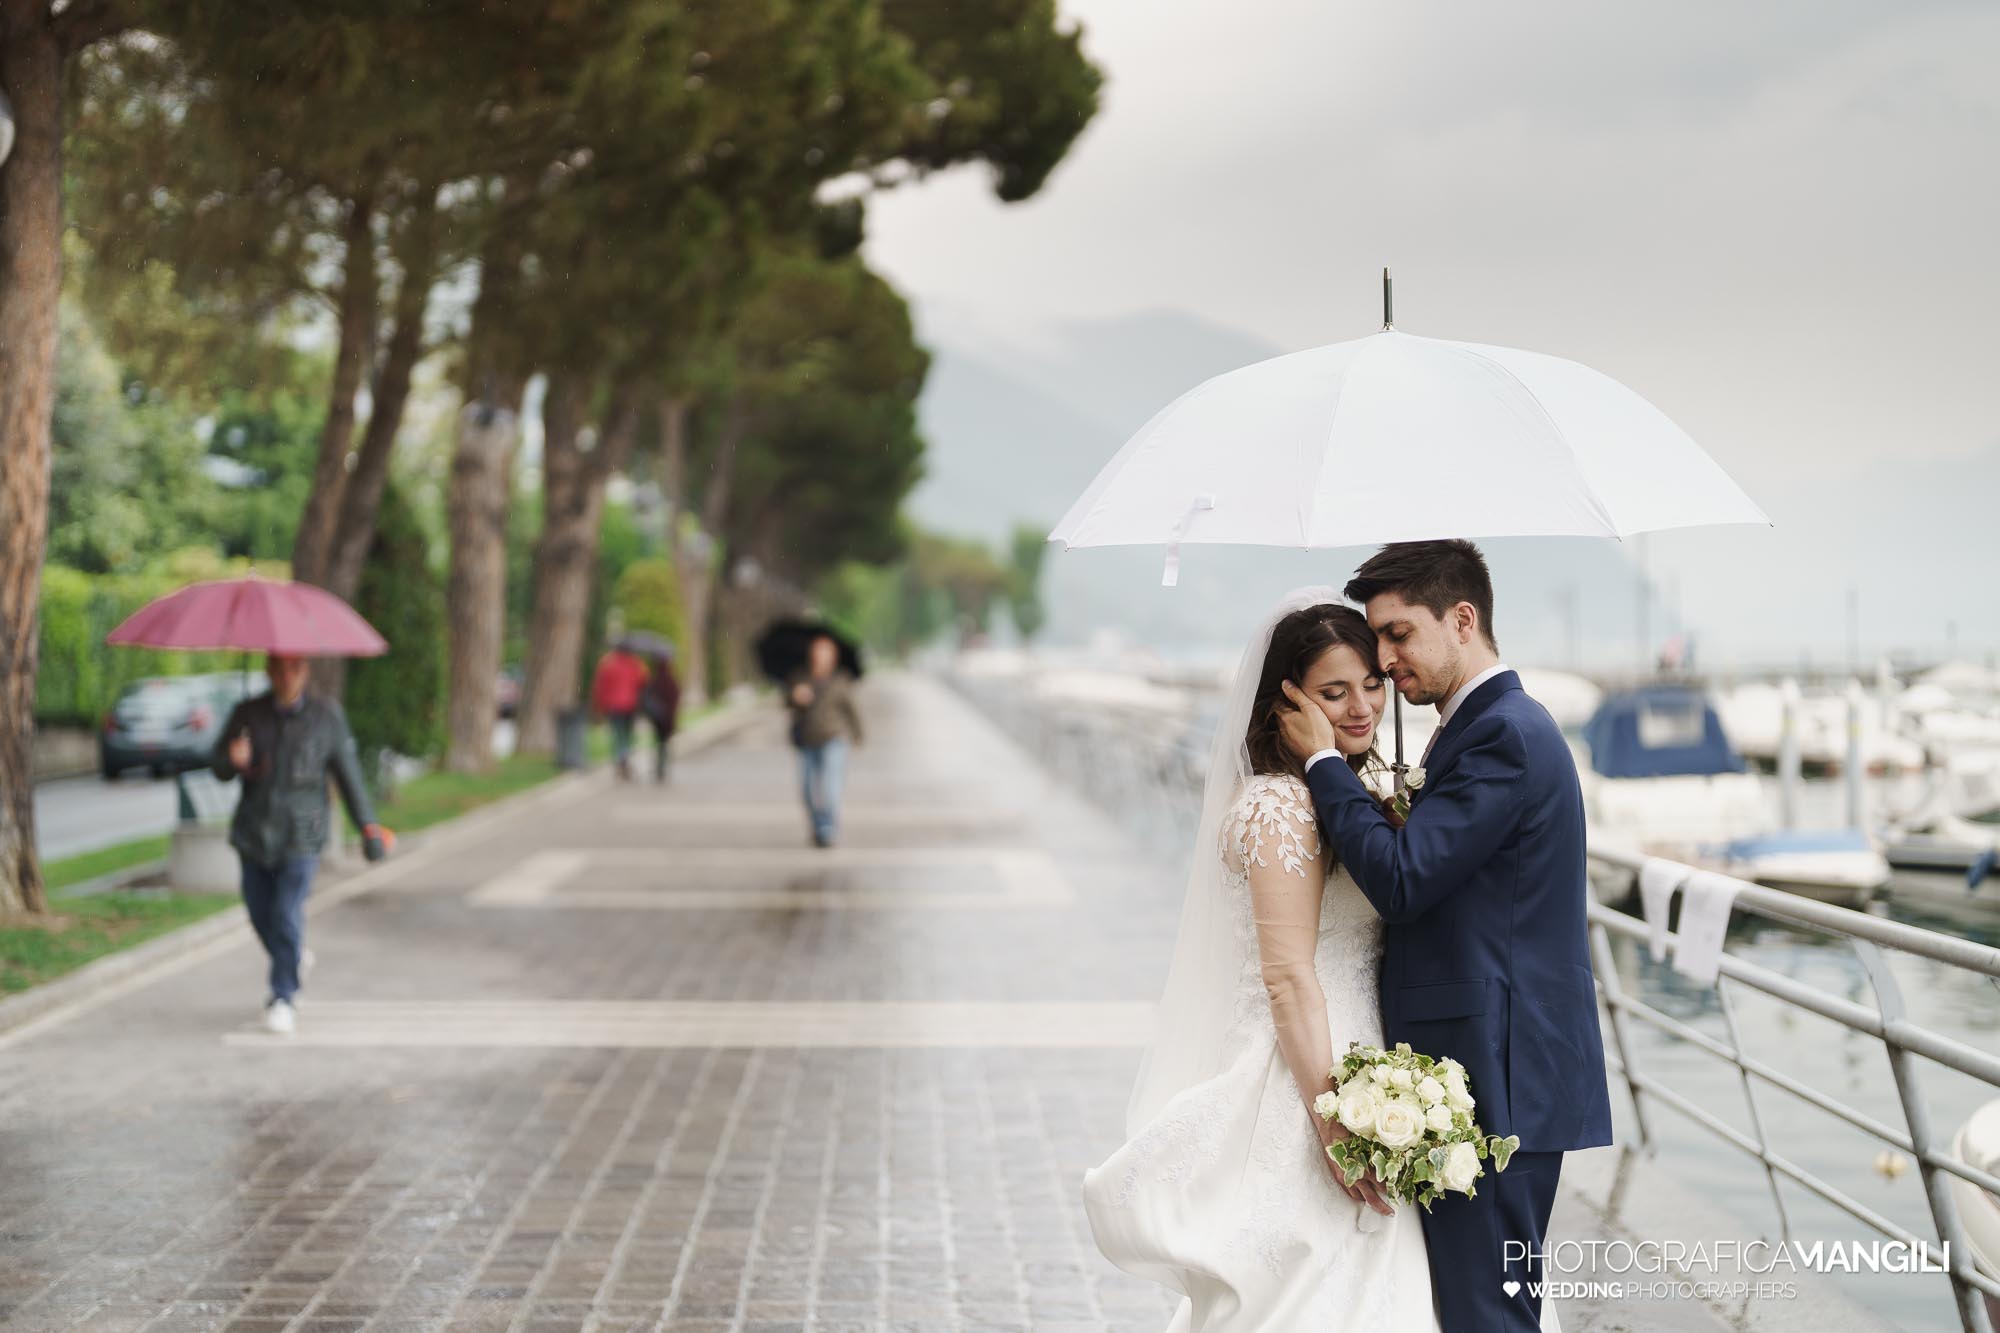 043 servizio fotografico wedding reportage ritratto sposi lungolago Sarnico lago Iseo Bergamo chiara oliviero